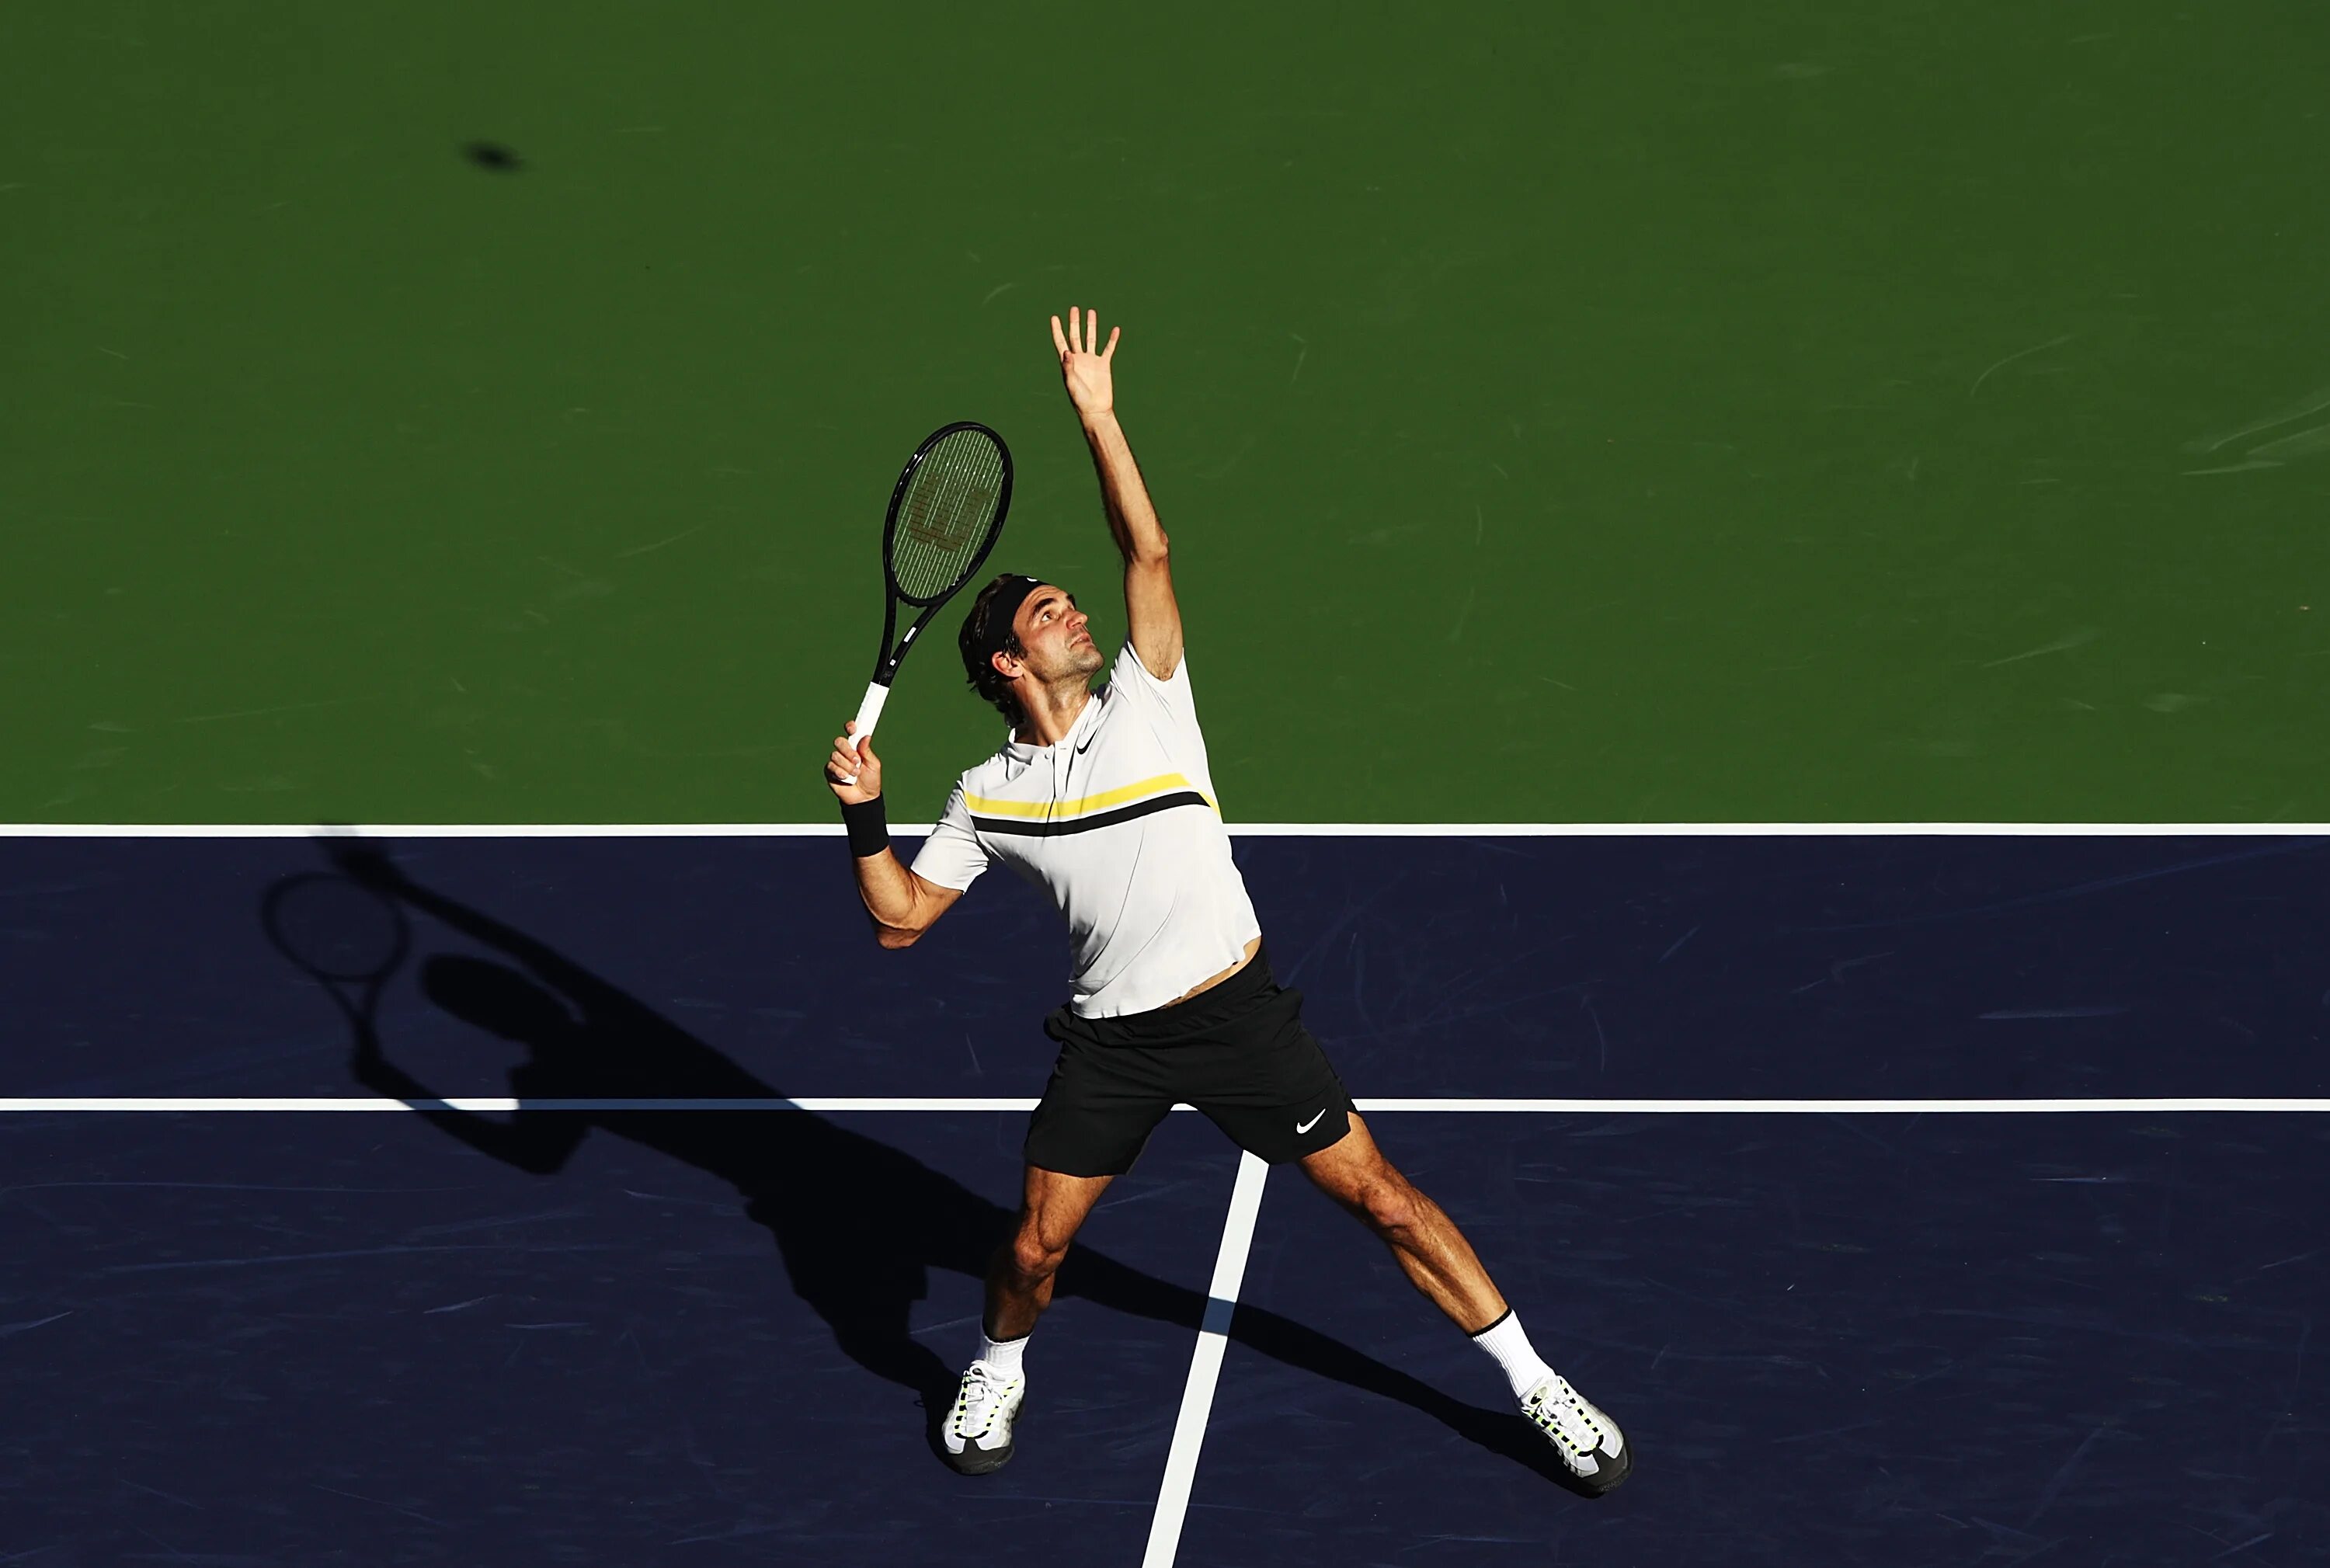 Первый удар в теннисе 6 букв. Теннис удары Федерер. Федерер Роджер удар слева. Удар смэш в большом теннисе. Роджер Федерер удар слета.